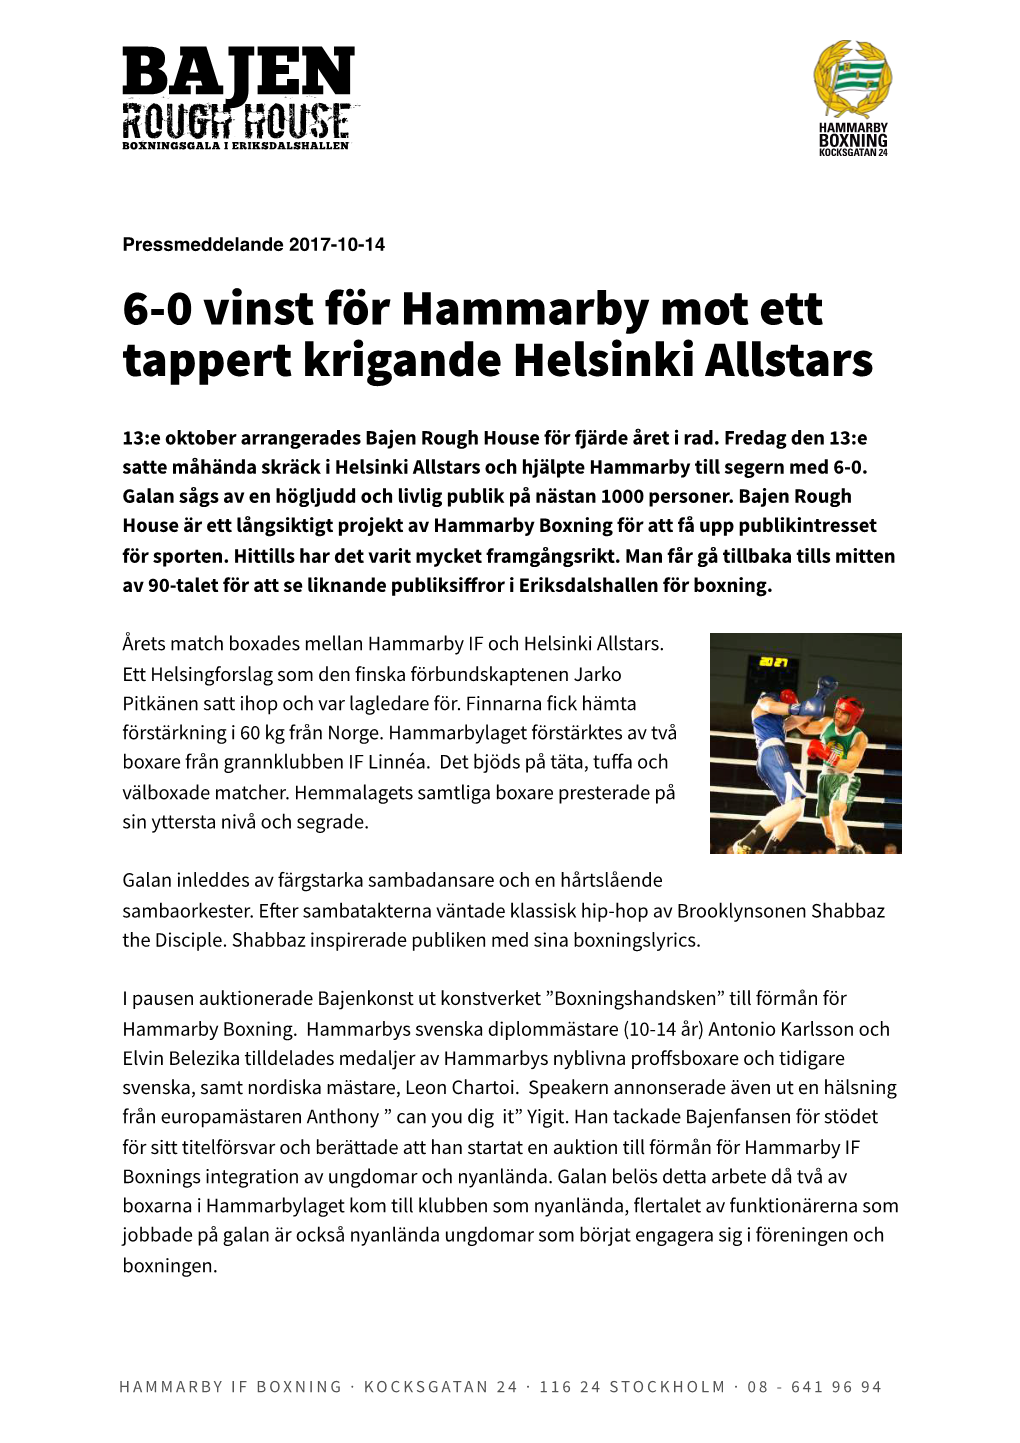 6-0 Vinst För Hammarby Mot Ett Tappert Krigande Helsinki Allstars